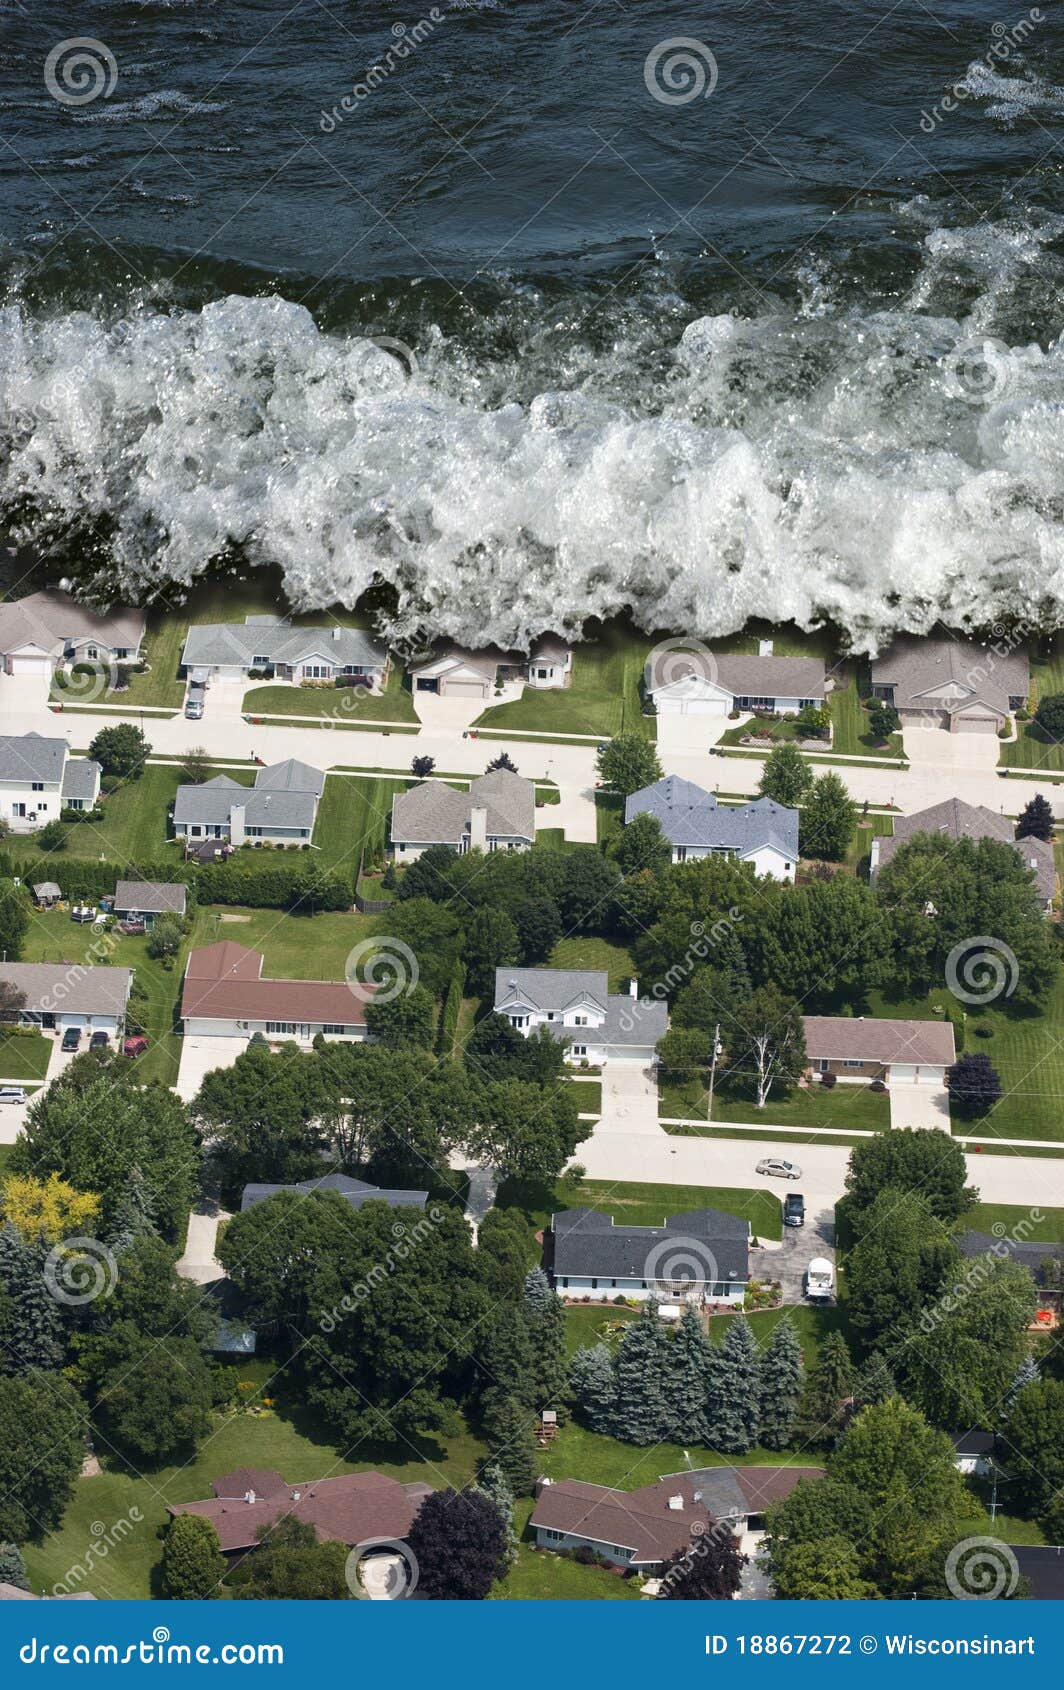 giant tsunami tidal wave natural disaster